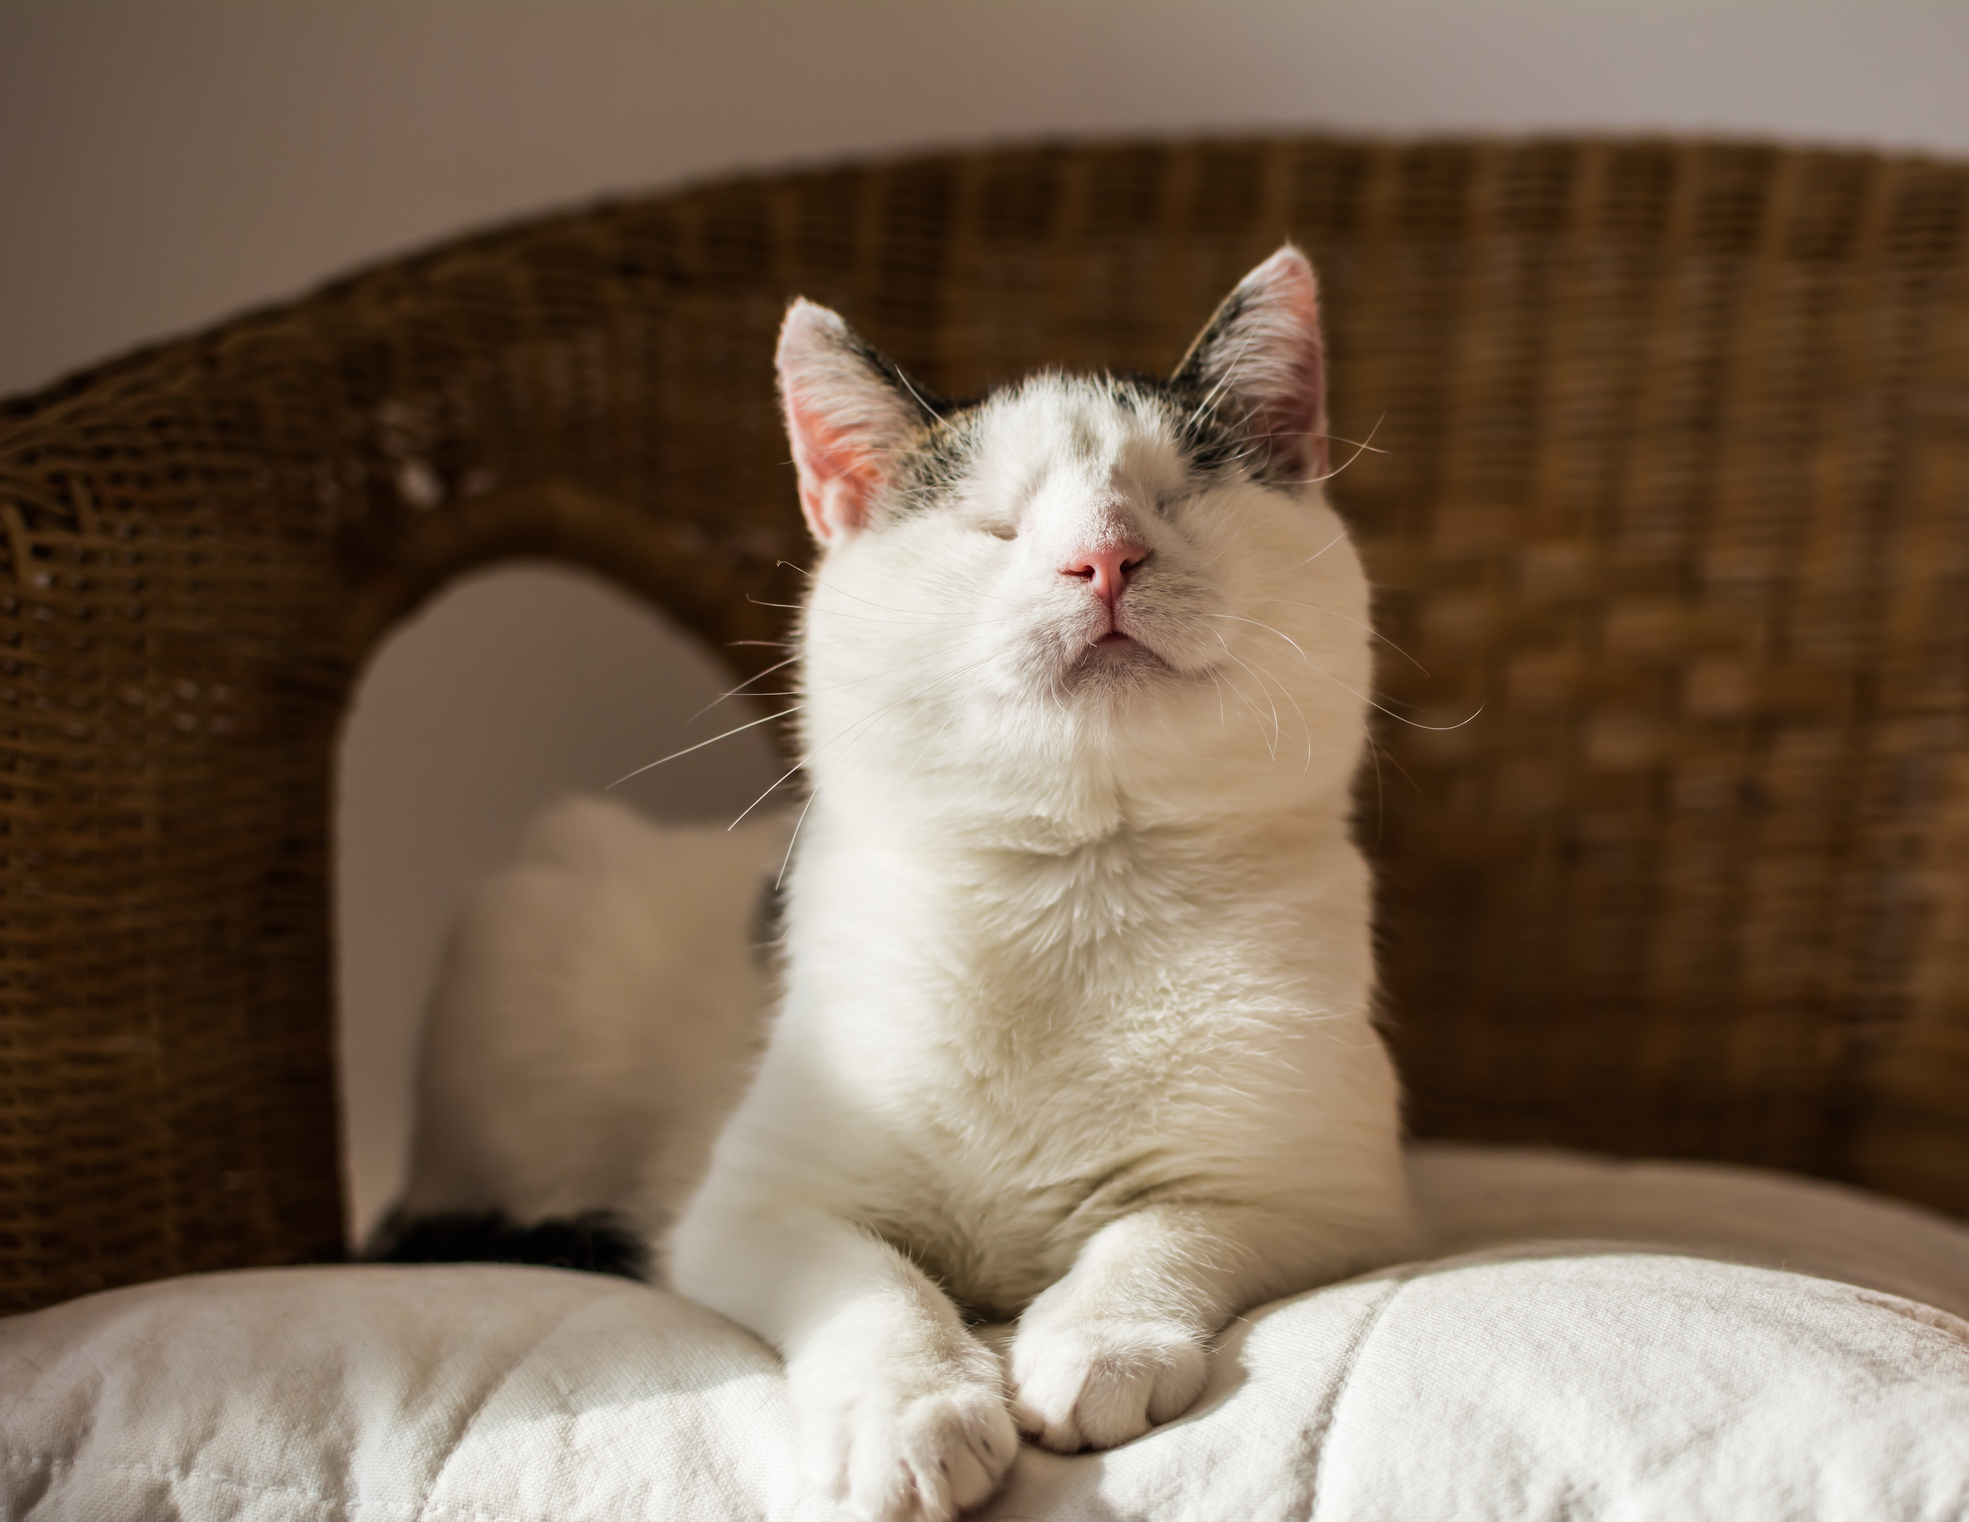 Cute blind cat sits in the sun